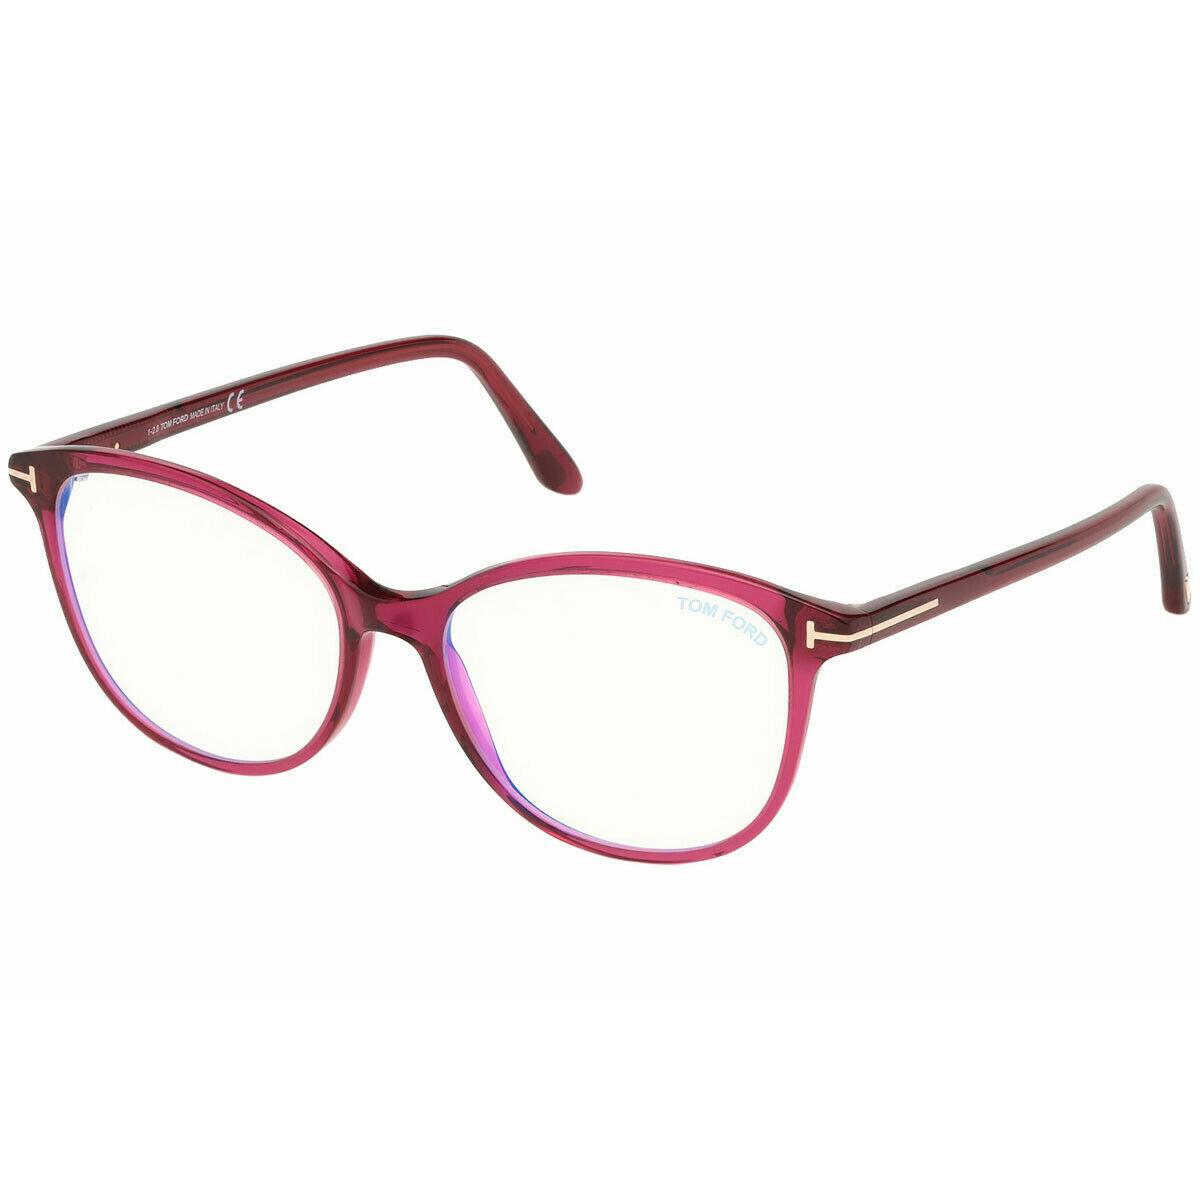 Tom Ford Eyeglasses FT5576B 075 54 Size 54-16-140 Optical Frame